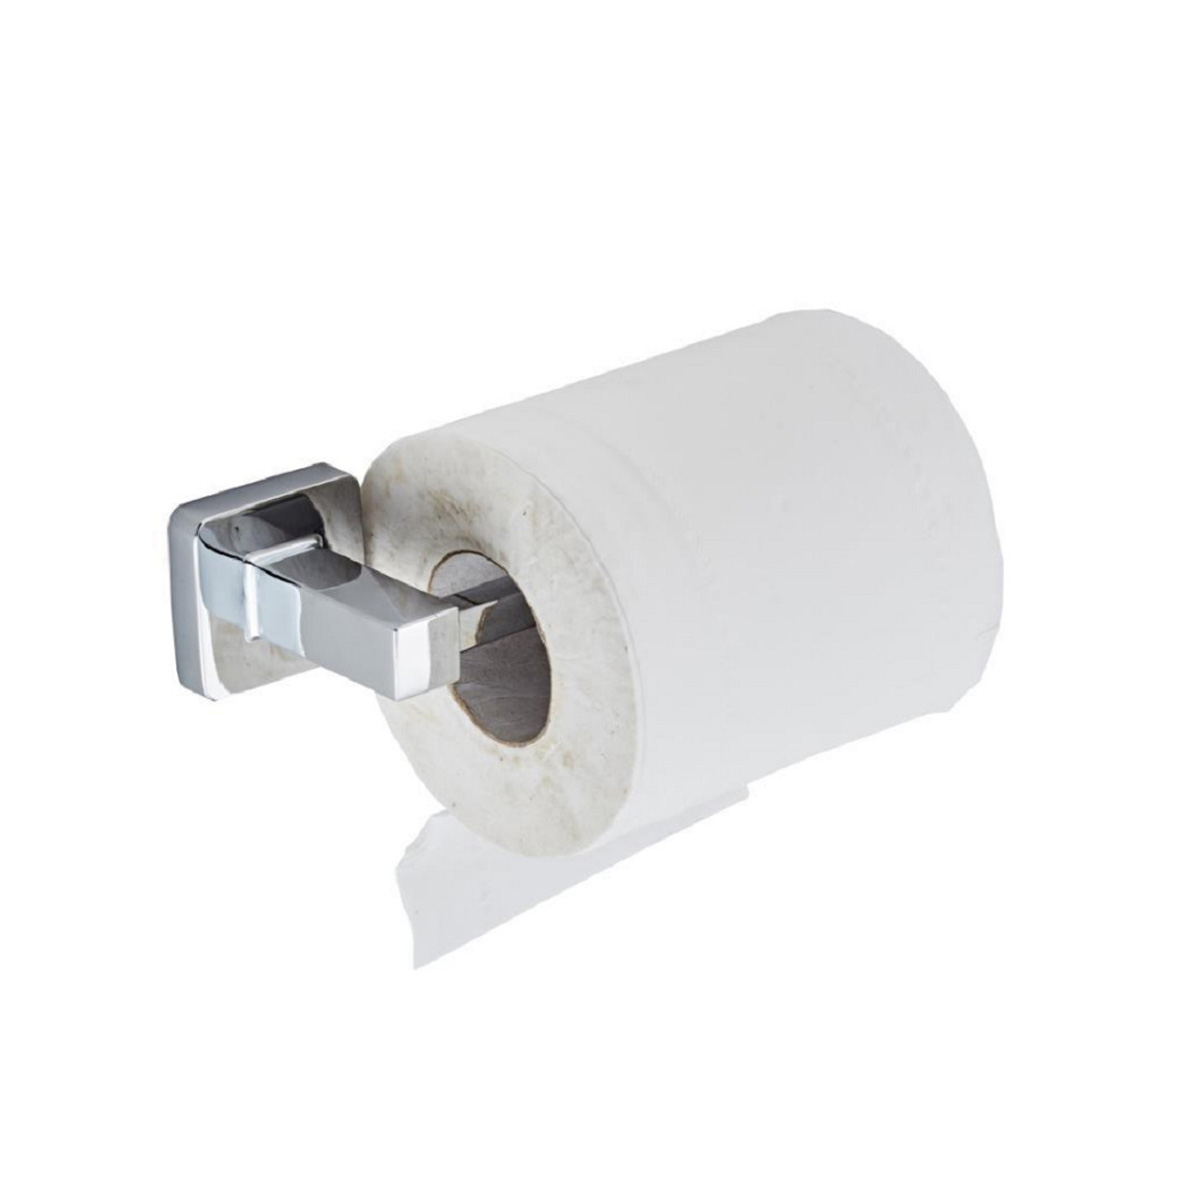 Stainless-Steel-Paper-Tissue-Holder-Rack-Hanger-Towel-Ring-Wall-Mounted-Shelf-1726325-6